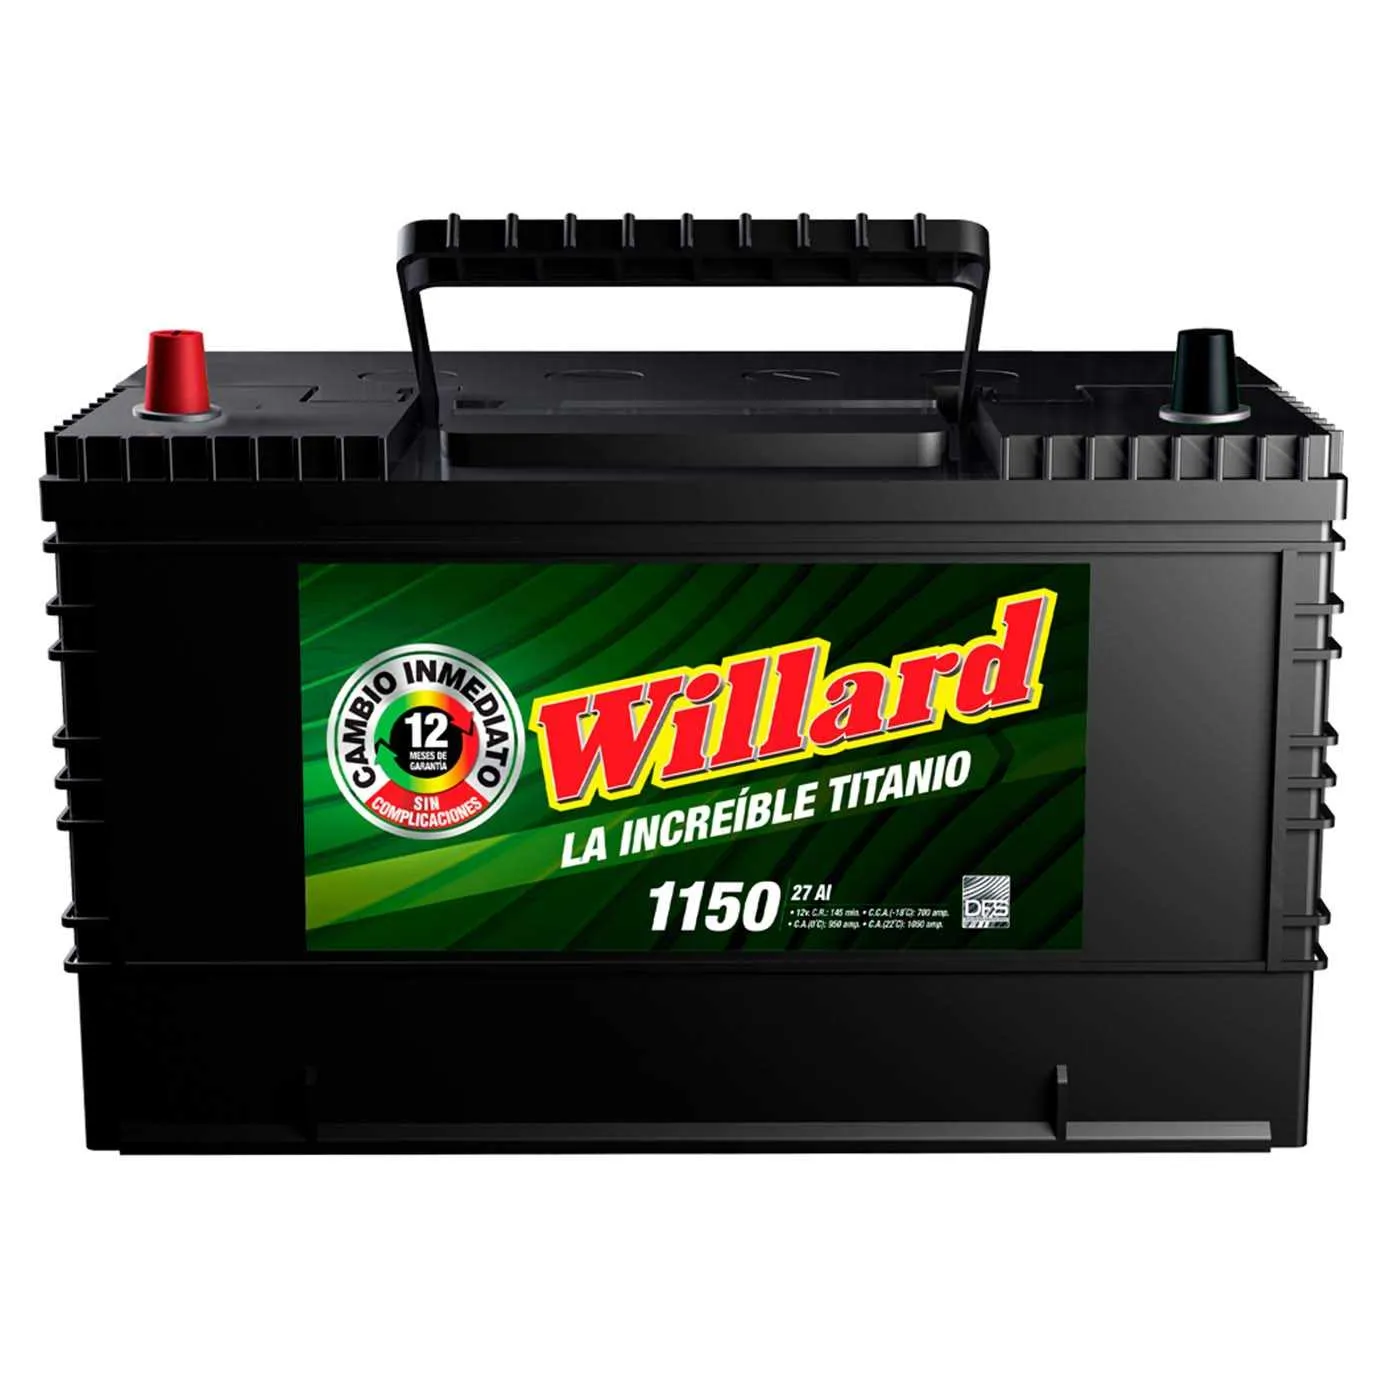 Batería Camioneta WILLARD 27AI-1150